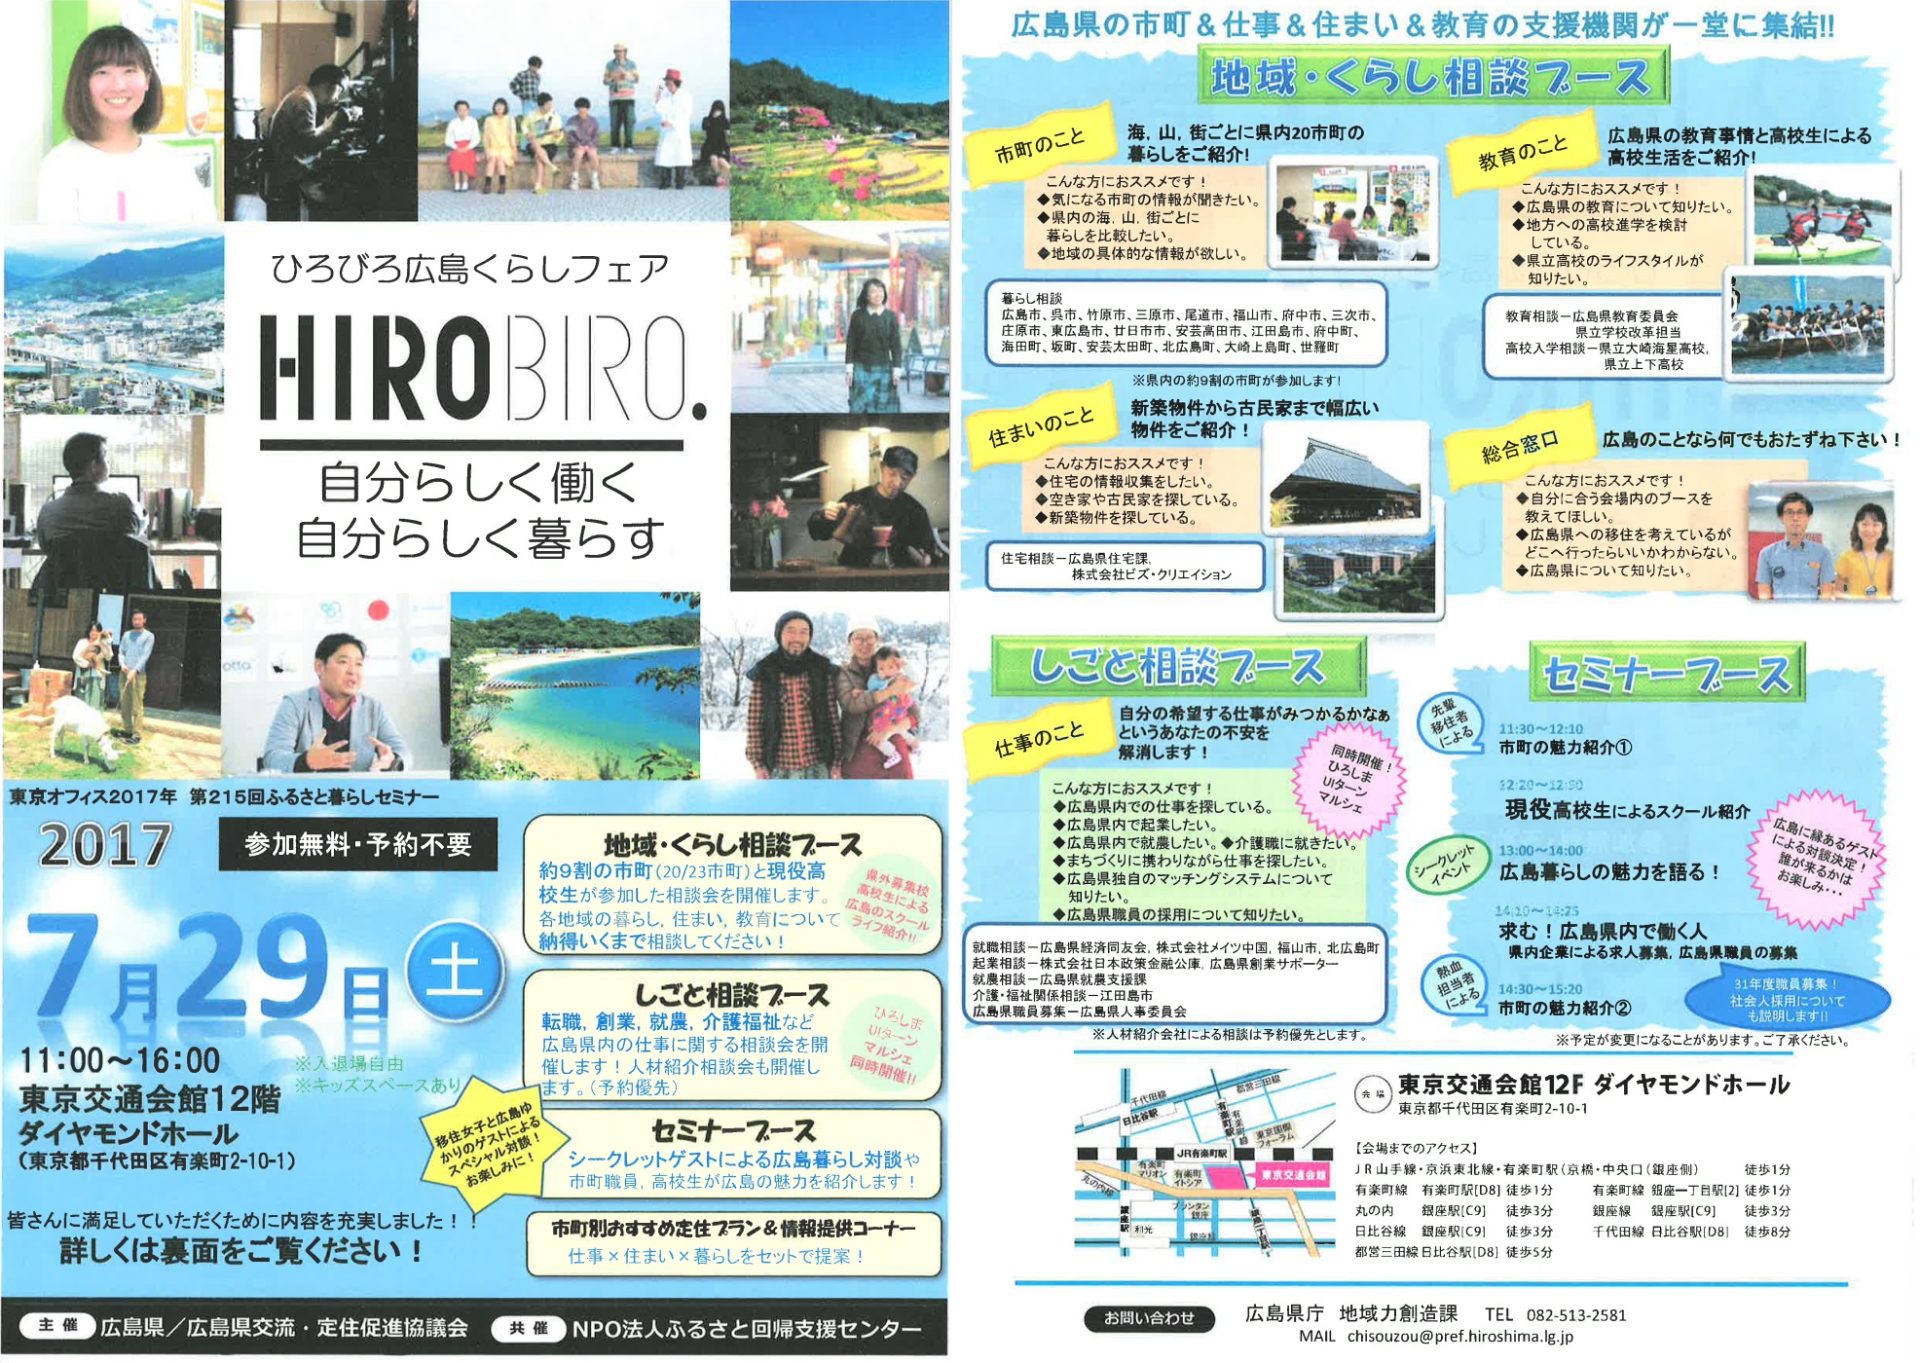 HIROBIRO.広島くらしフェア・自分らしく働く、自分らしく暮らすフェアを開催します！ | 移住関連イベント情報